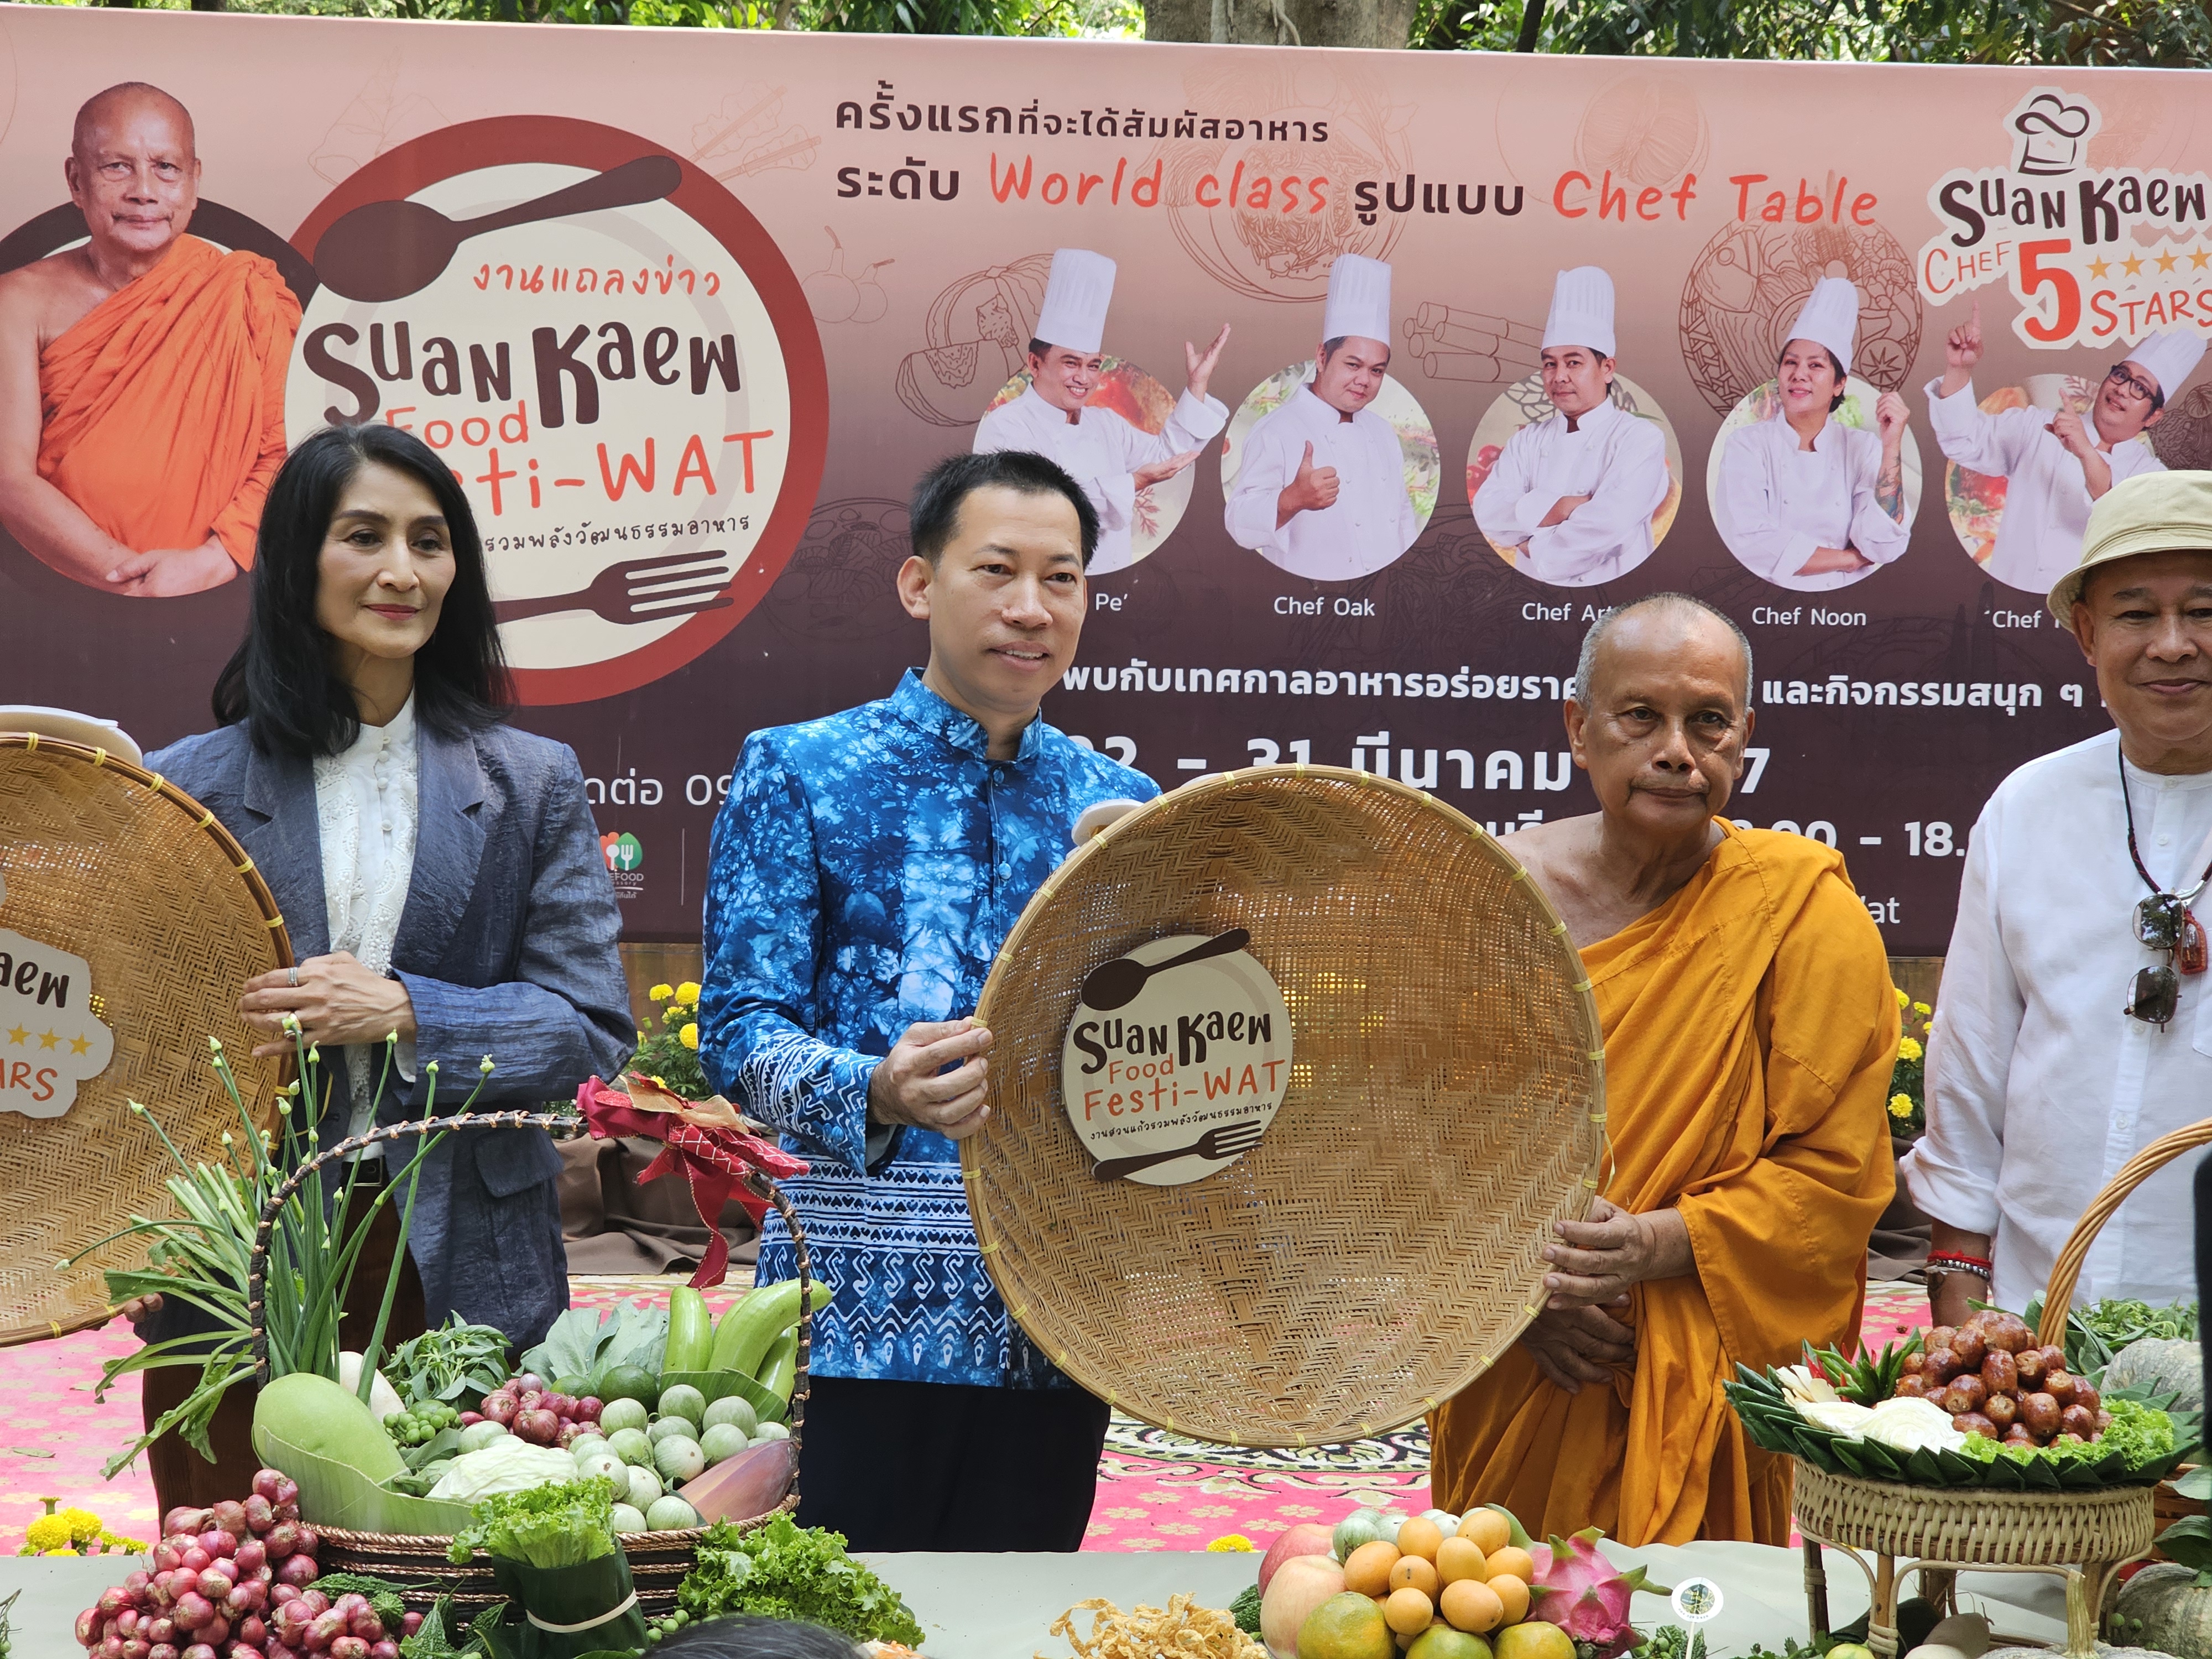 เปิดแล้ว งาน Suan Kaew Food Festi-Wat ร้านอาหารกว่า 50 ร้านที่เชฟการันตีพร้อมมาจำหน่ายให้ได้ลิ้มลอง